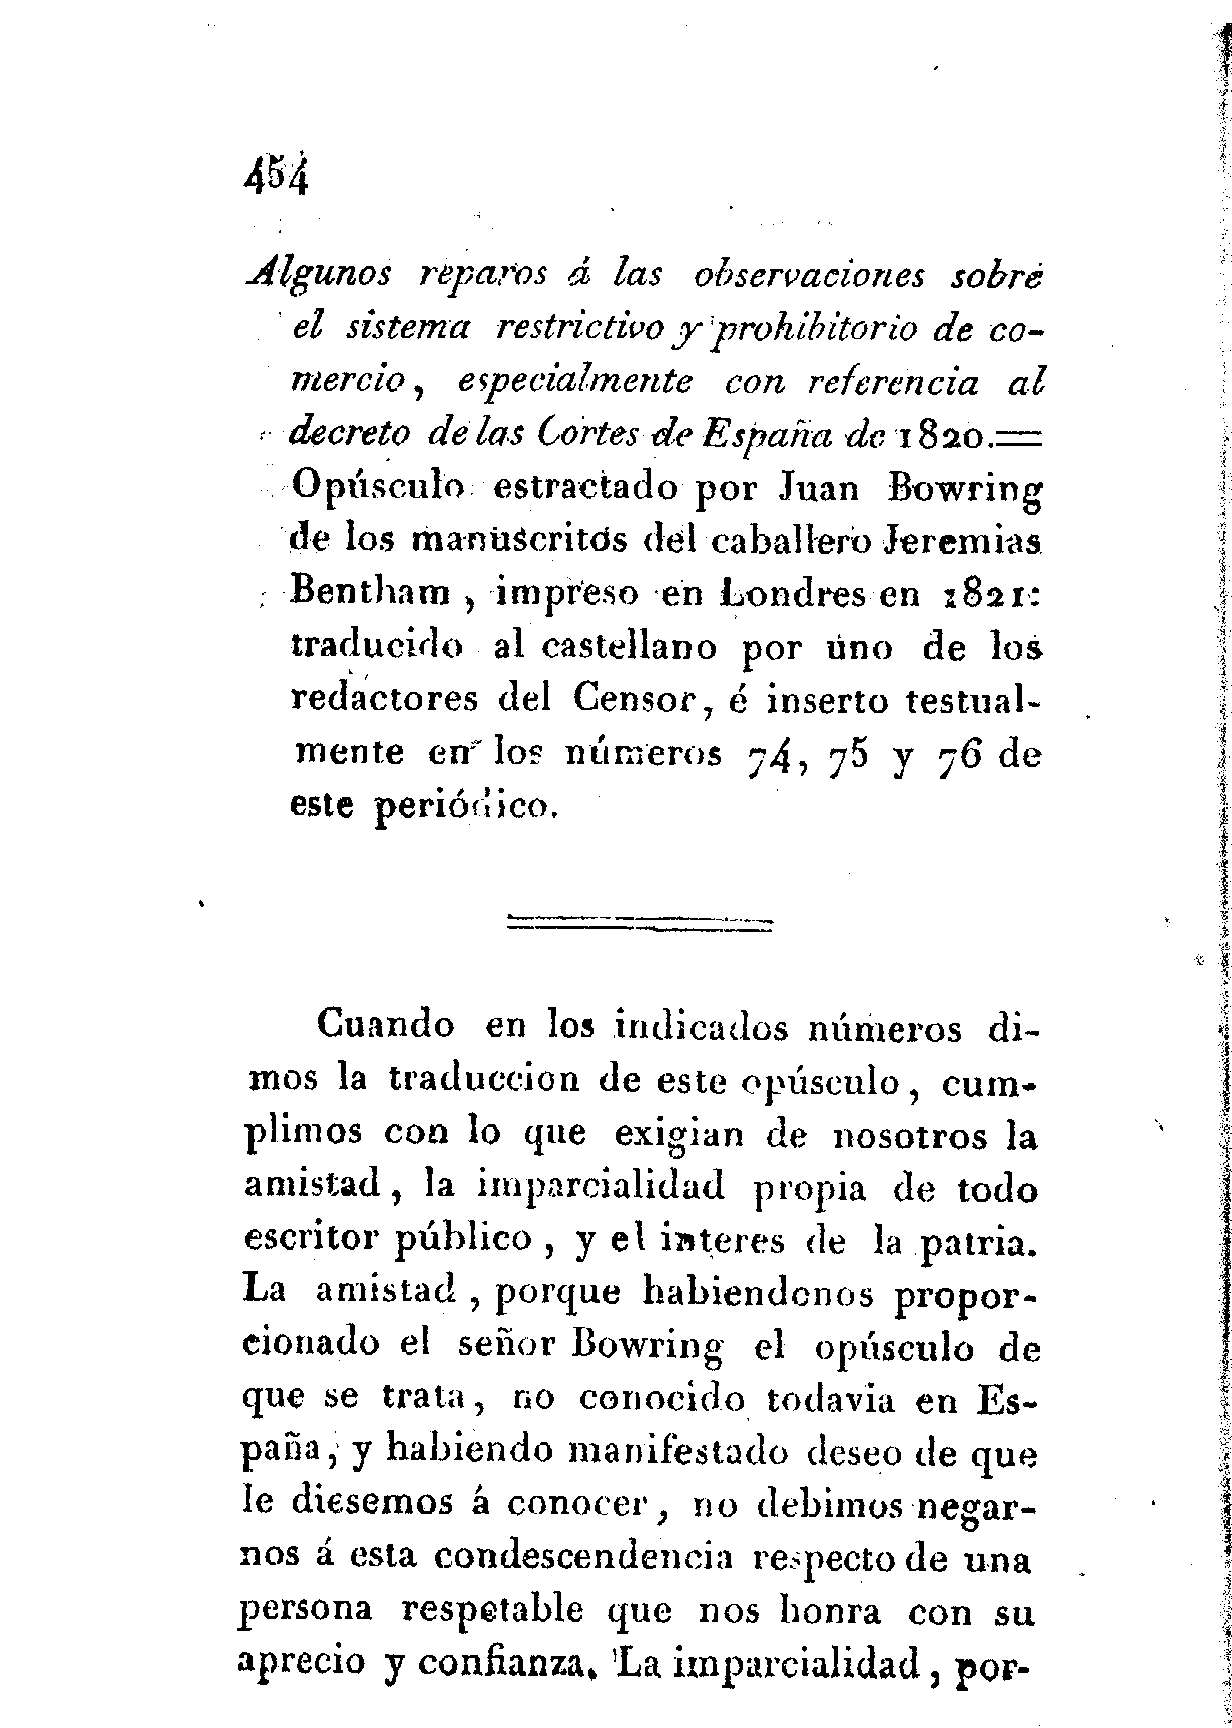 Algunos reparos a las observaciones sobre el sistema restrictivo y prohibitorio de comercio, especialmente con referencia al decreto de las Cortes de España en 1820